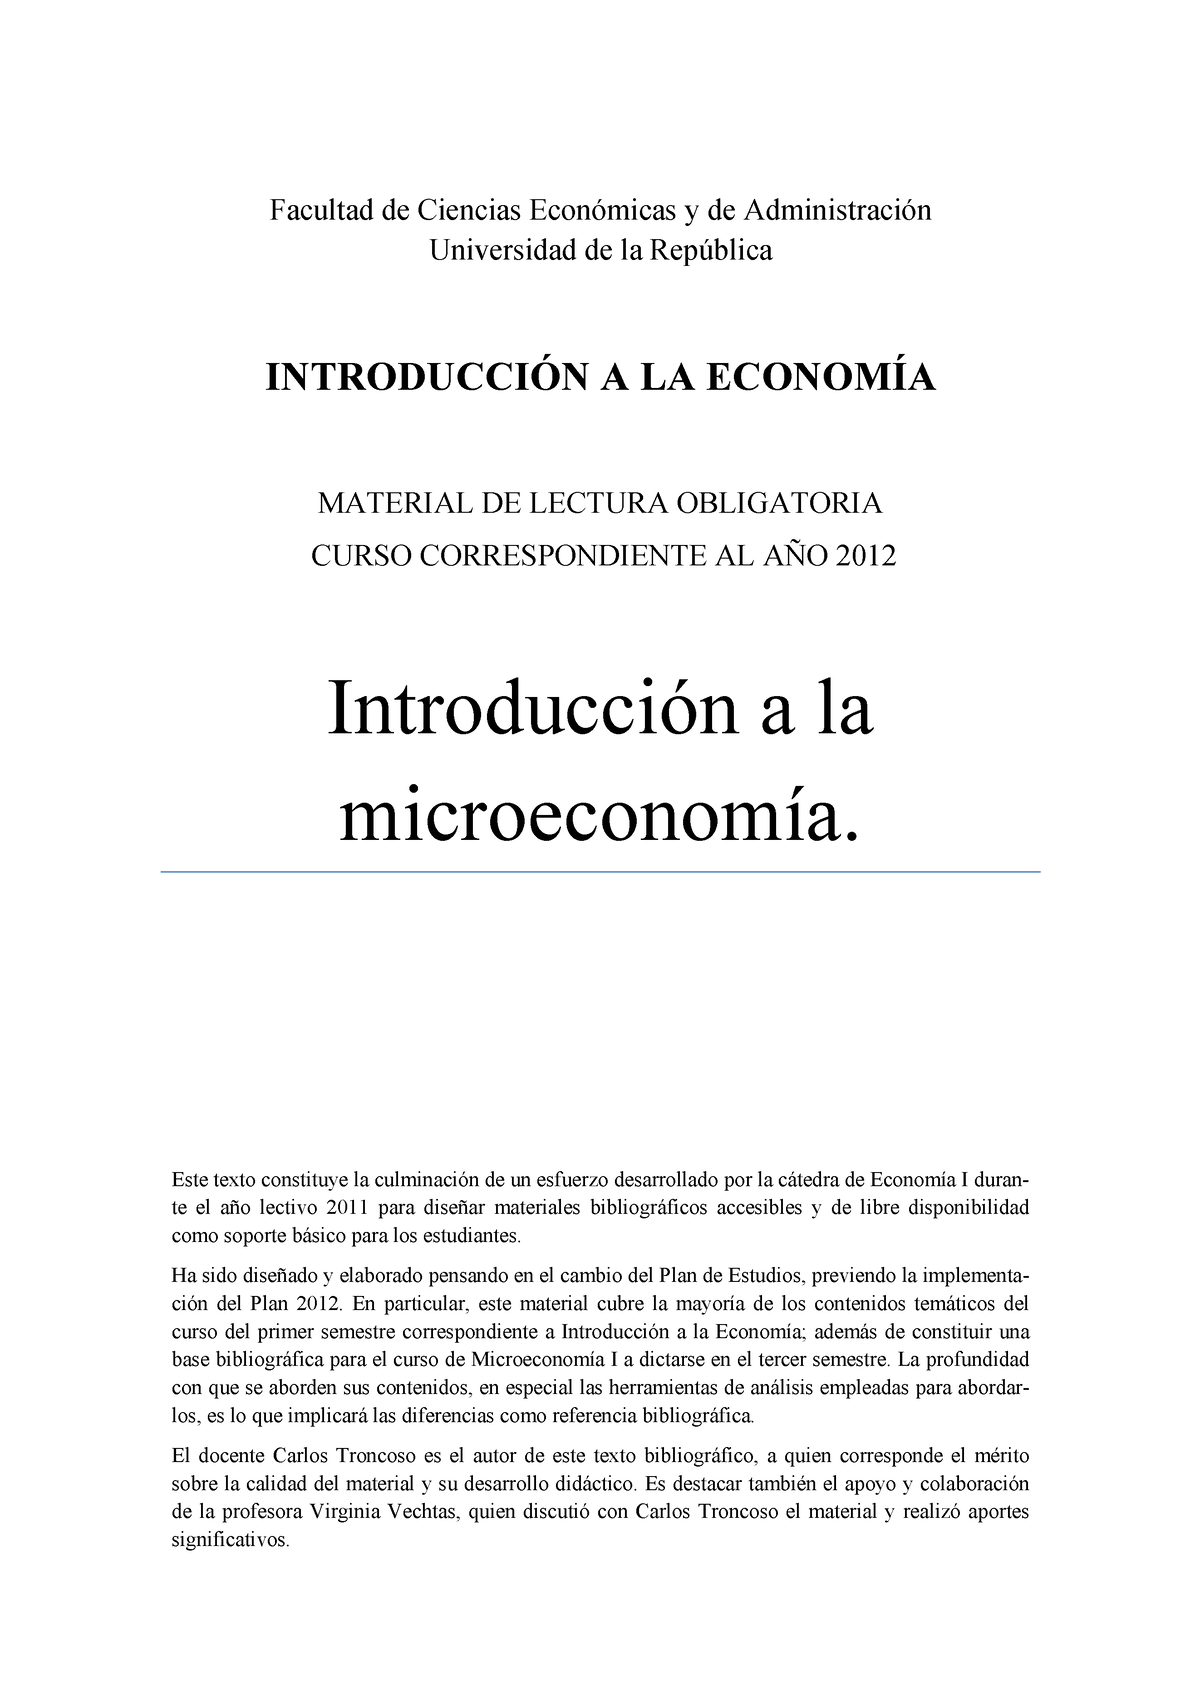 Libro Micro 2015 - economy - Facultad de Ciencias Económicas y de ...